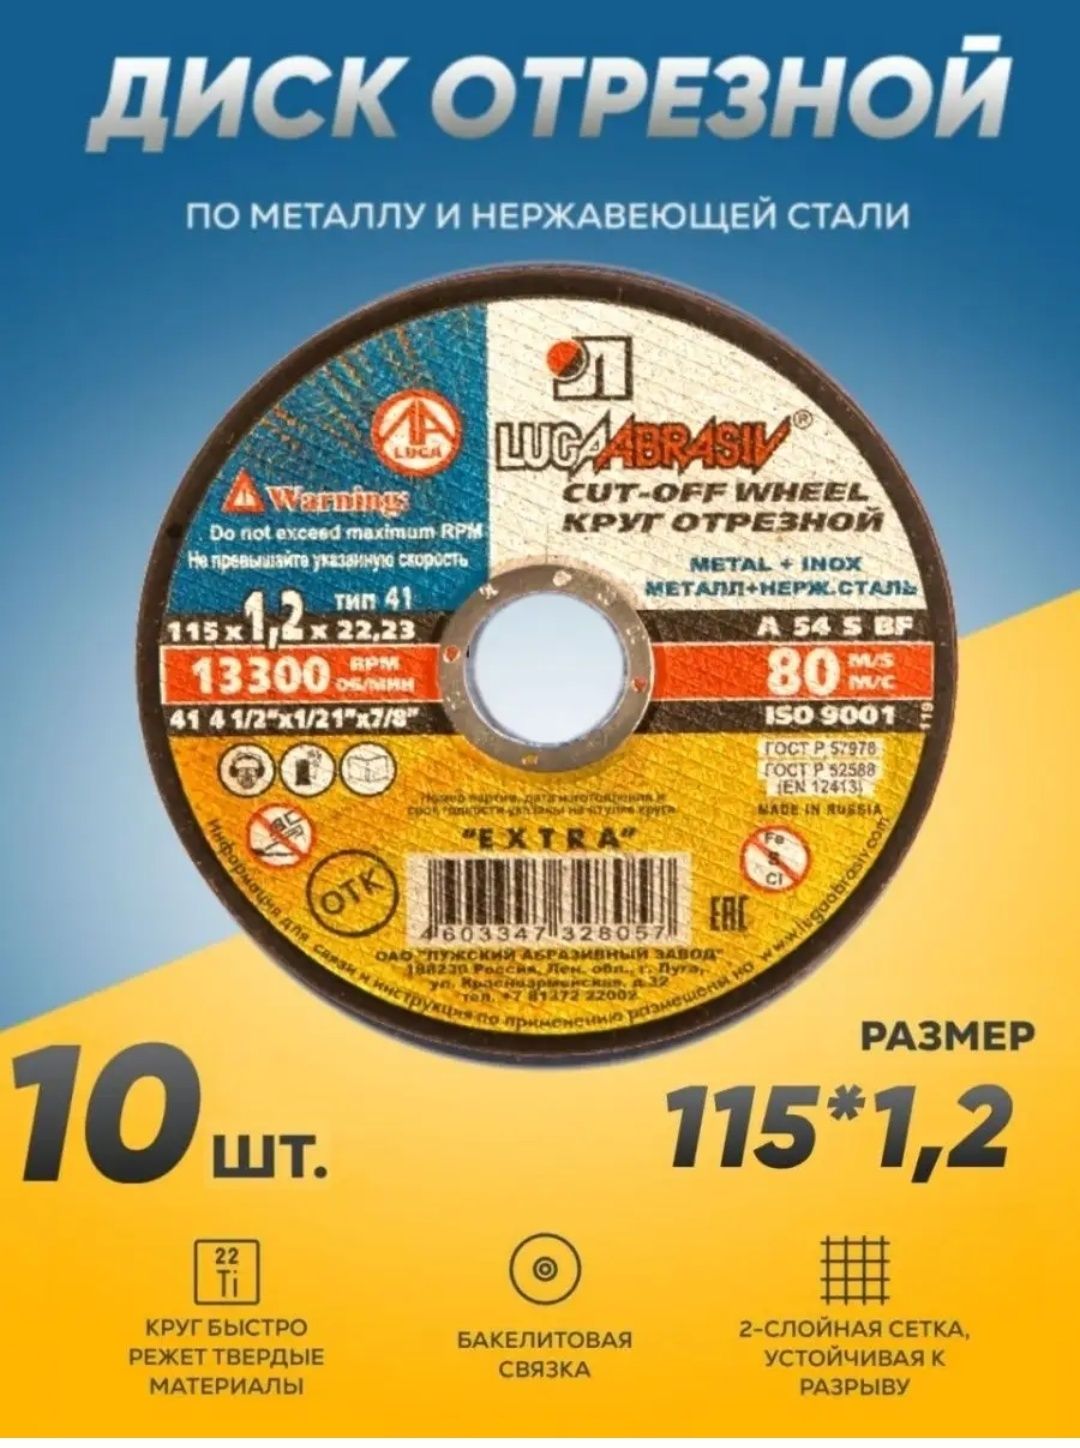 Отрезной диск для болгарка разных размеров.